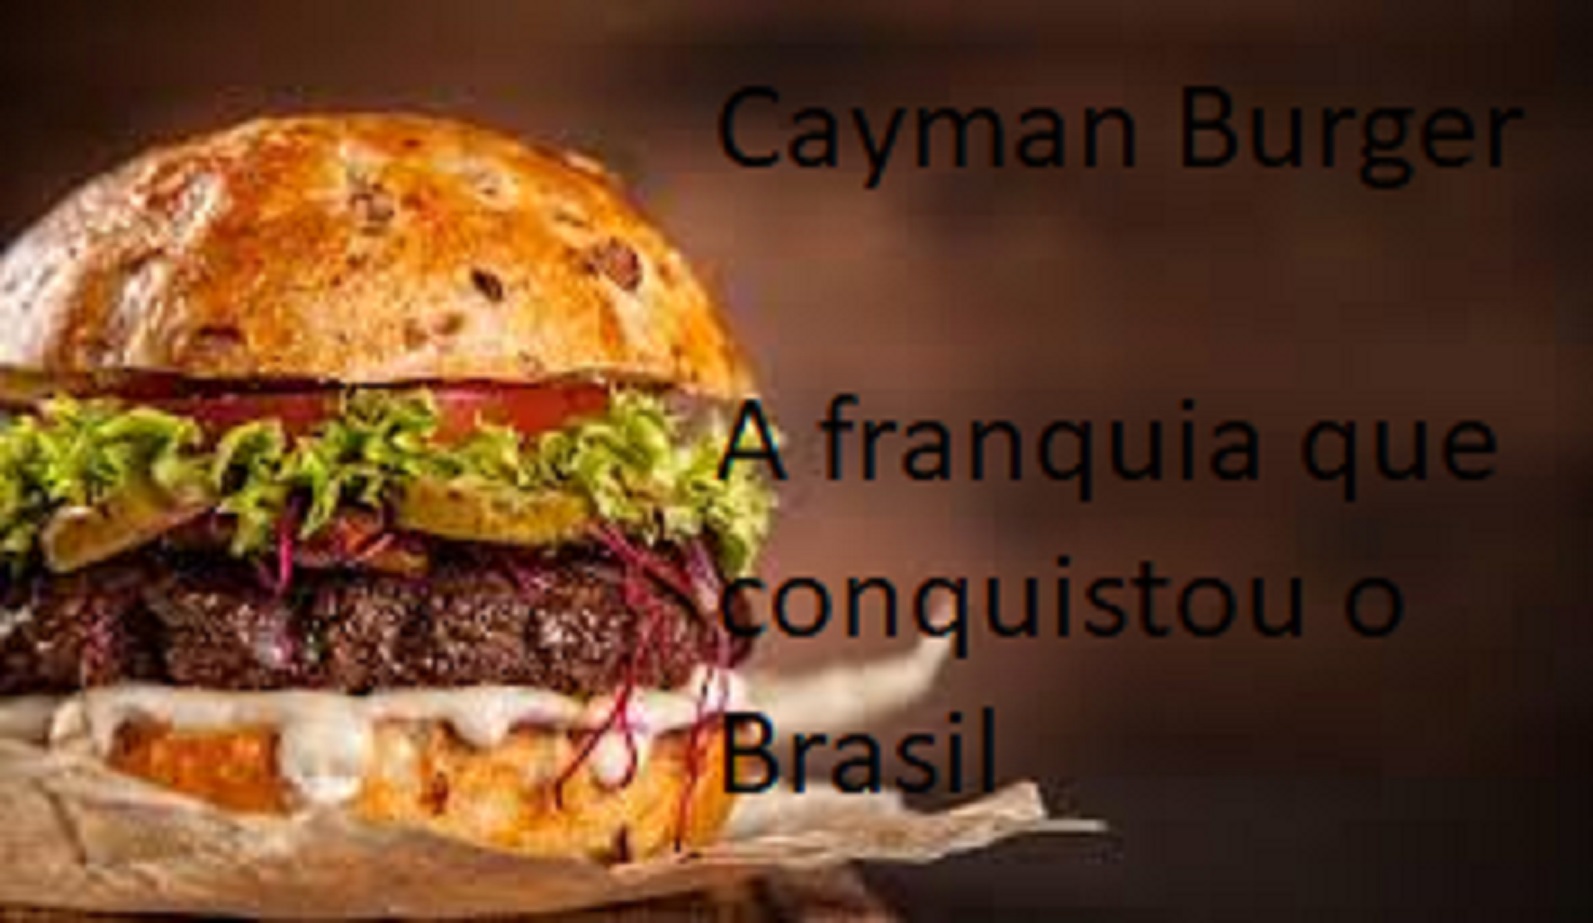 Cayman Burger a franquia que mais cresce no Brasil